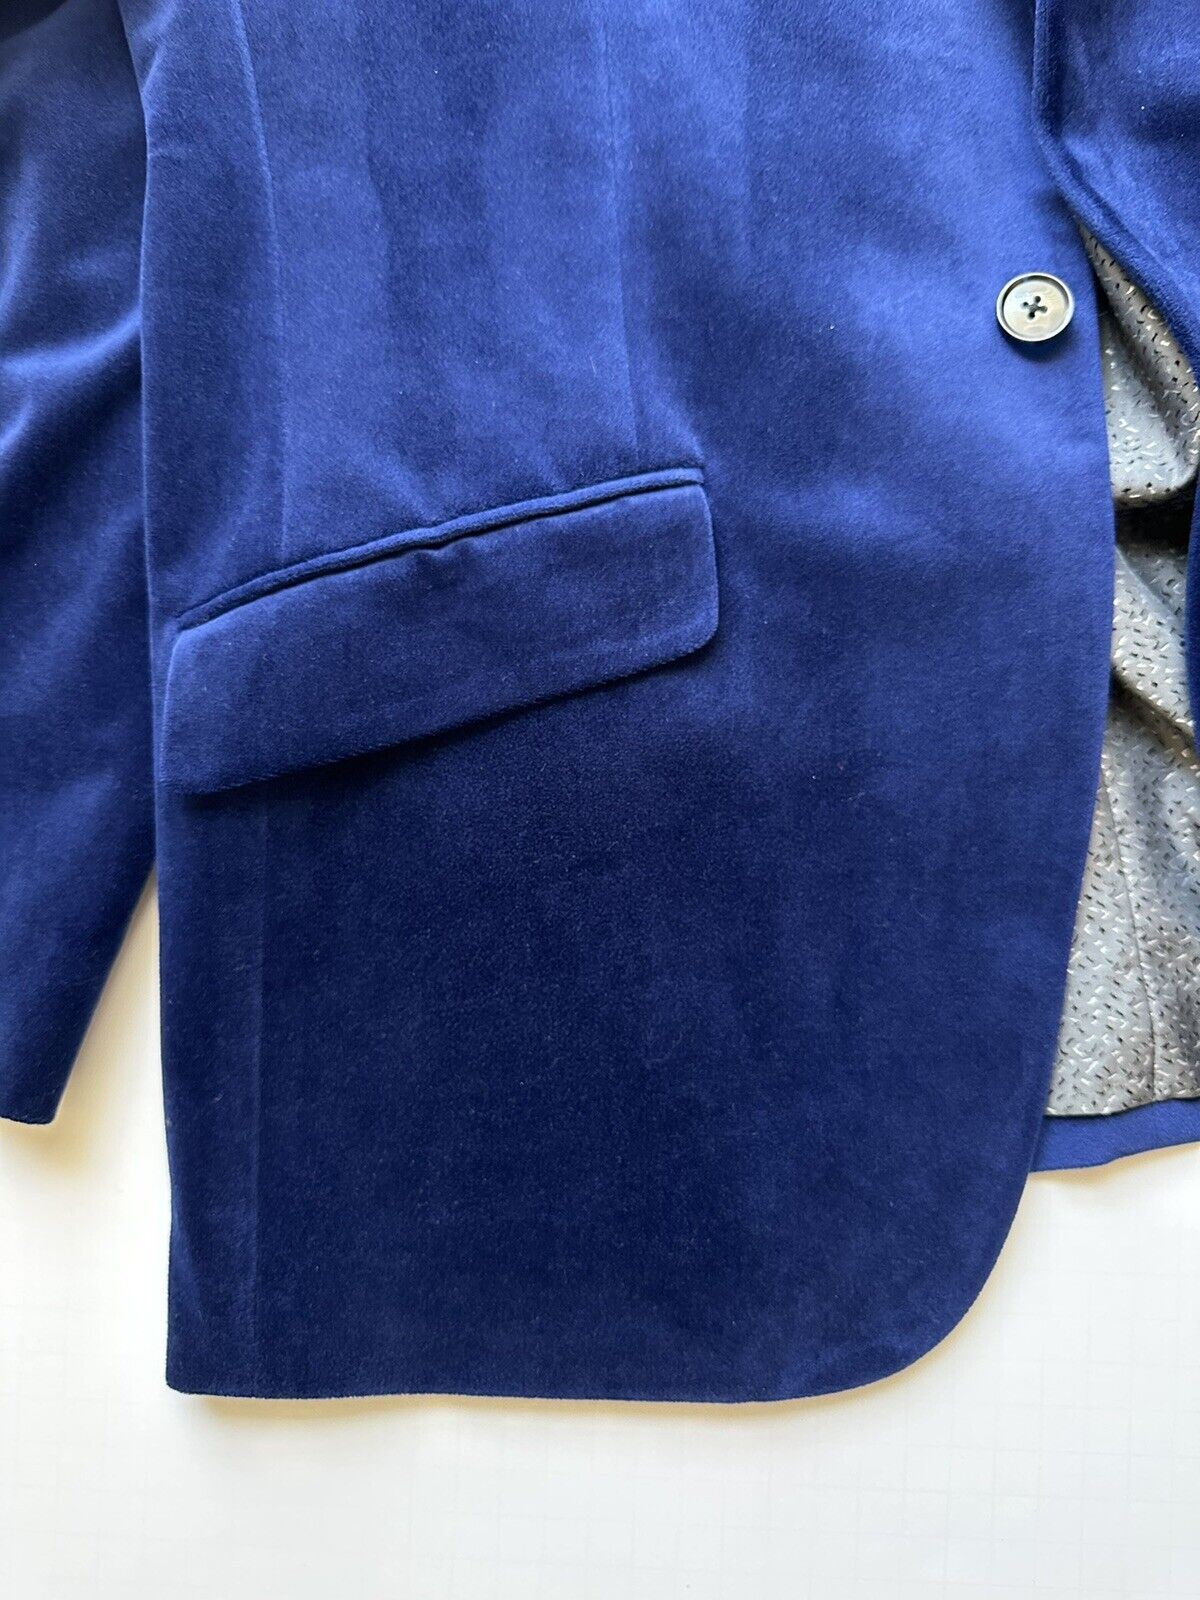 Мужская бархатная спортивная куртка Bar III, синяя, размер 40, США (50 евро) 